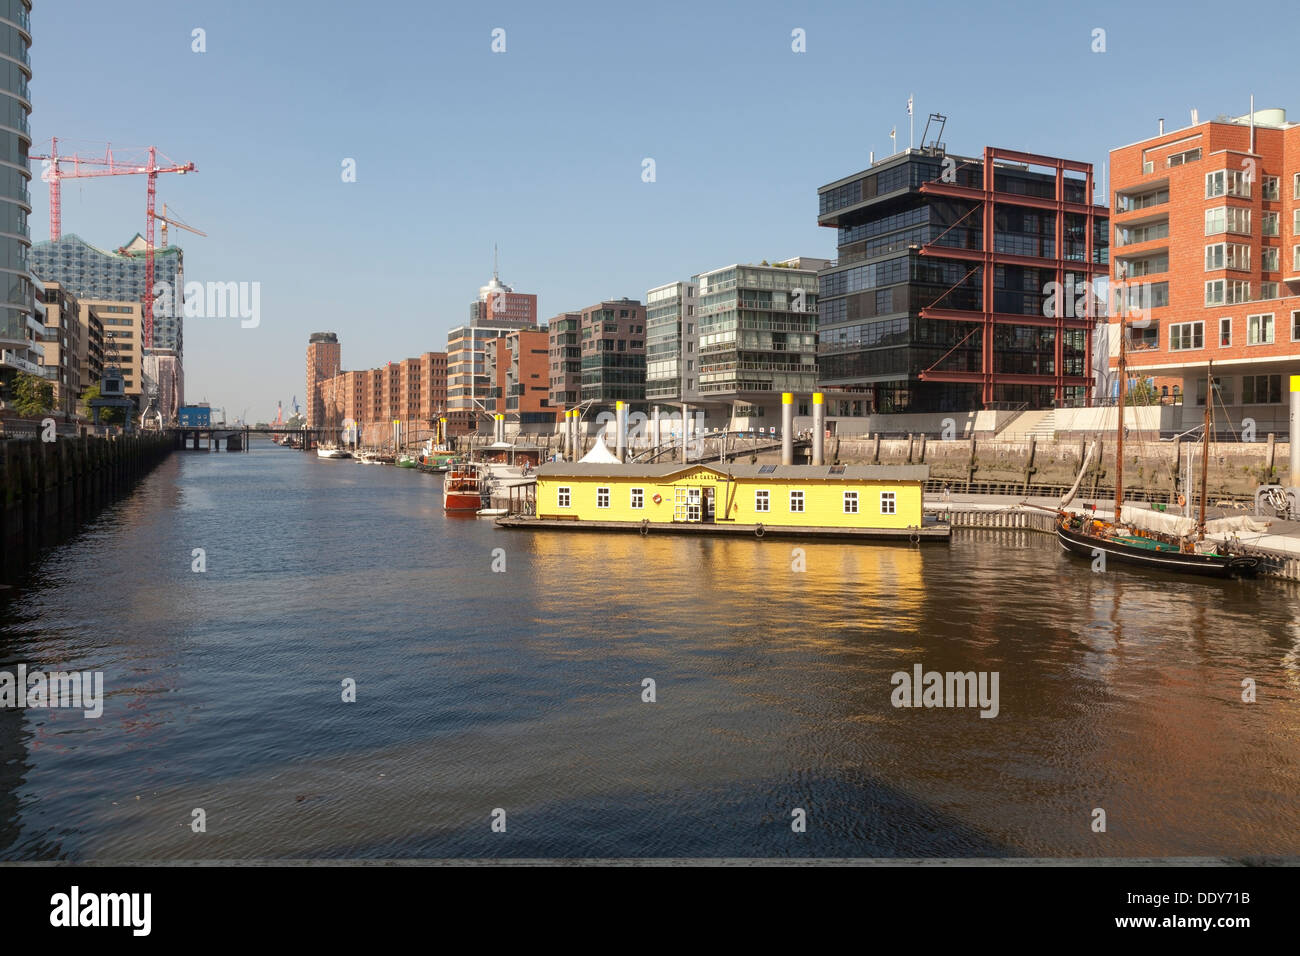 Hafen City, Am Sandtorkai / Dalmannkai trimestre, Hambourg, Allemagne Banque D'Images